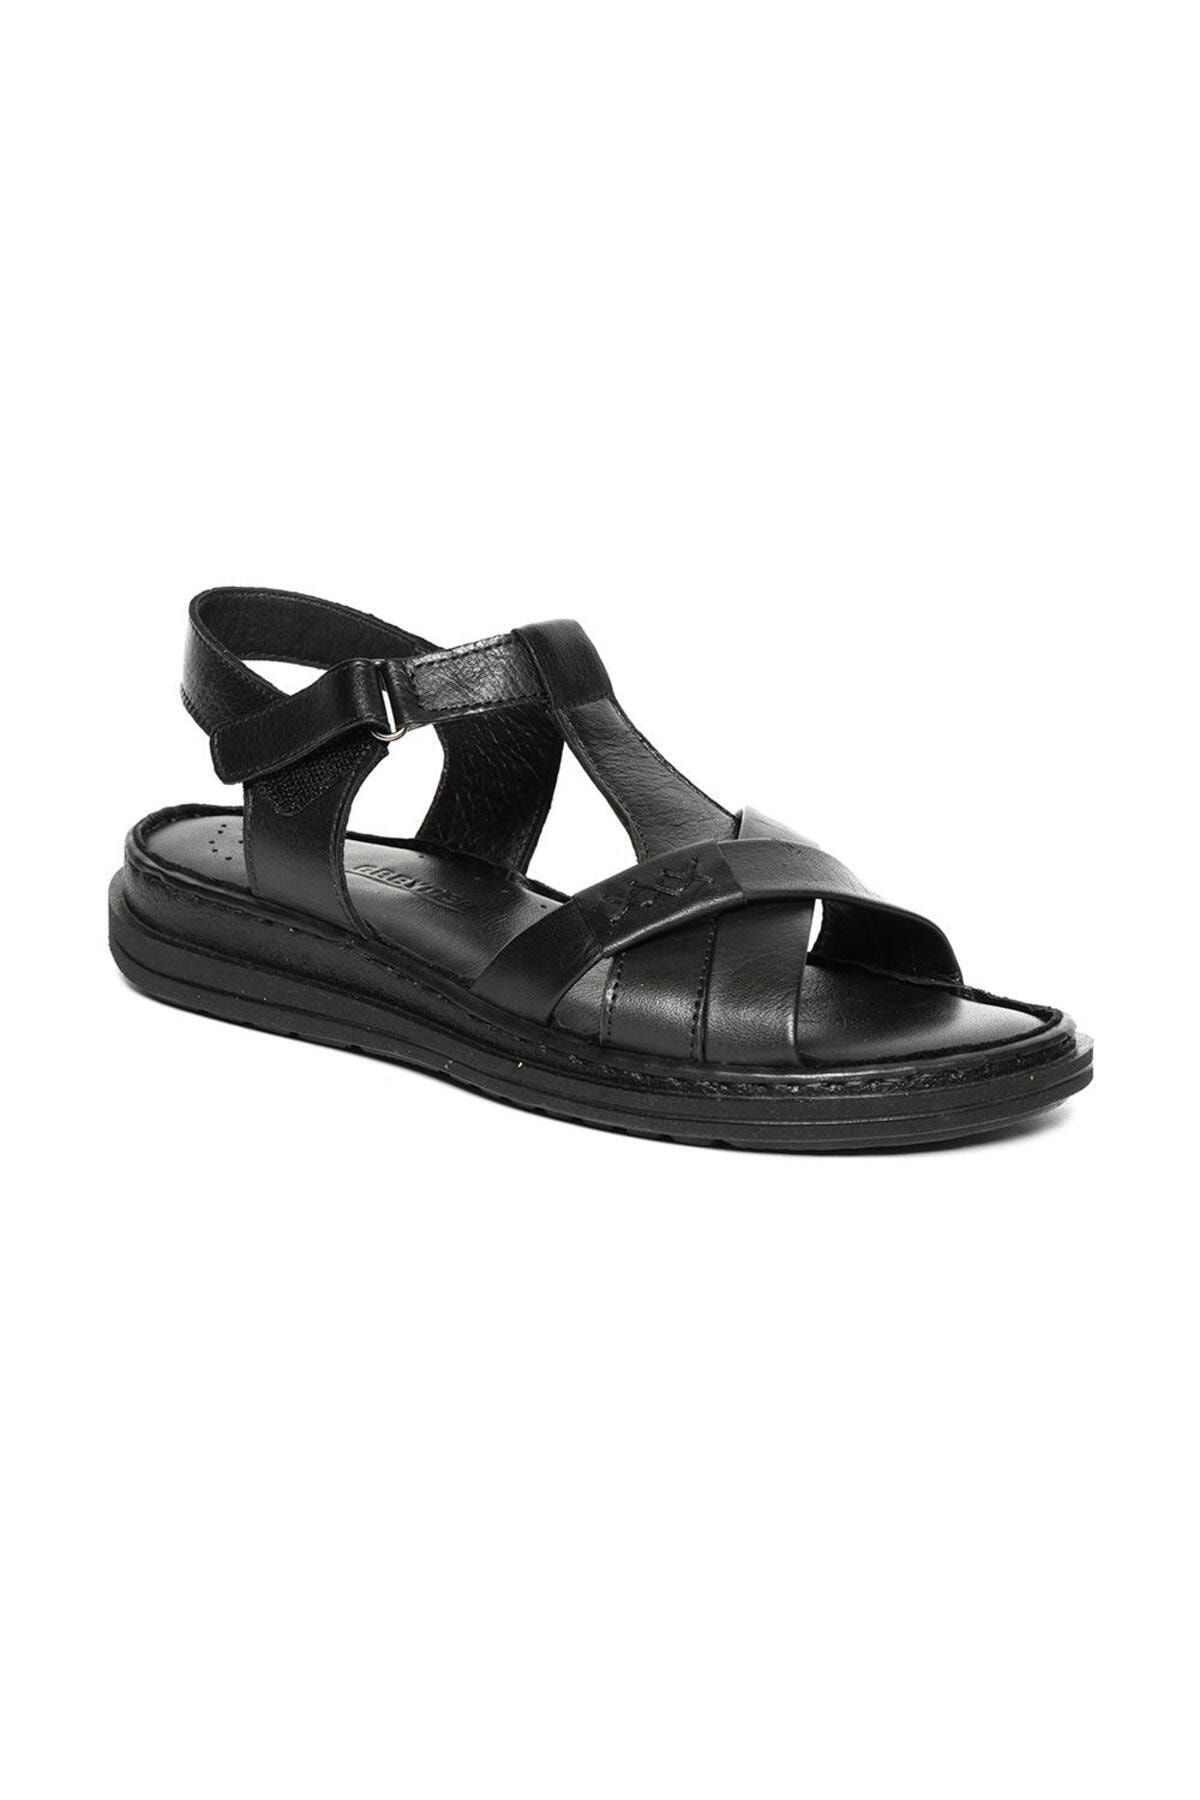 Greyder 50716 Siyah Deri Anatomik İç Taban Comfort Kadın Sandalet